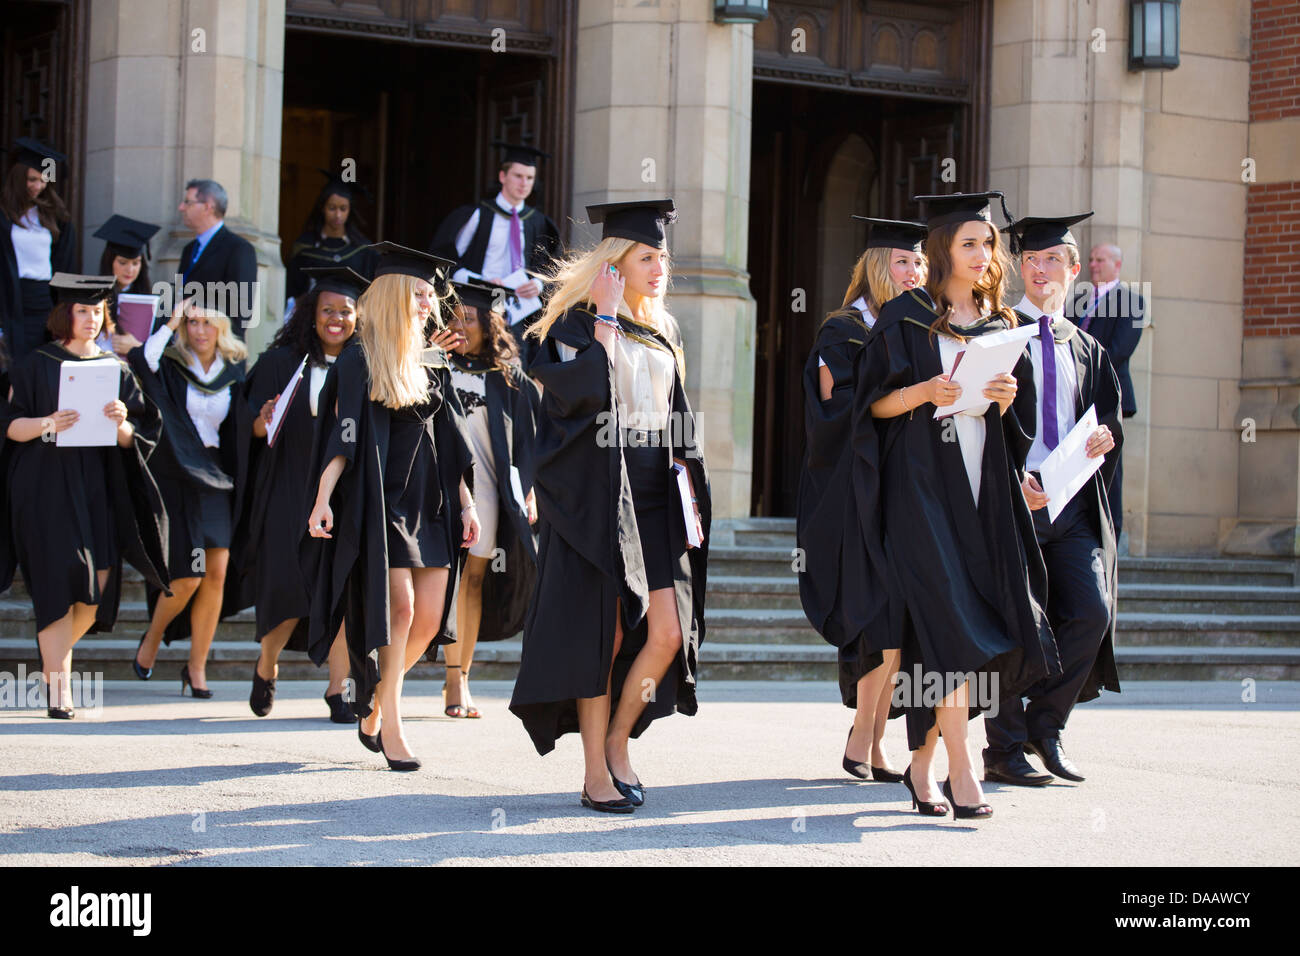 La grande salle laissant les diplômés à l'Université de Birmingham, Royaume-Uni, après la cérémonie de remise des diplômes Banque D'Images